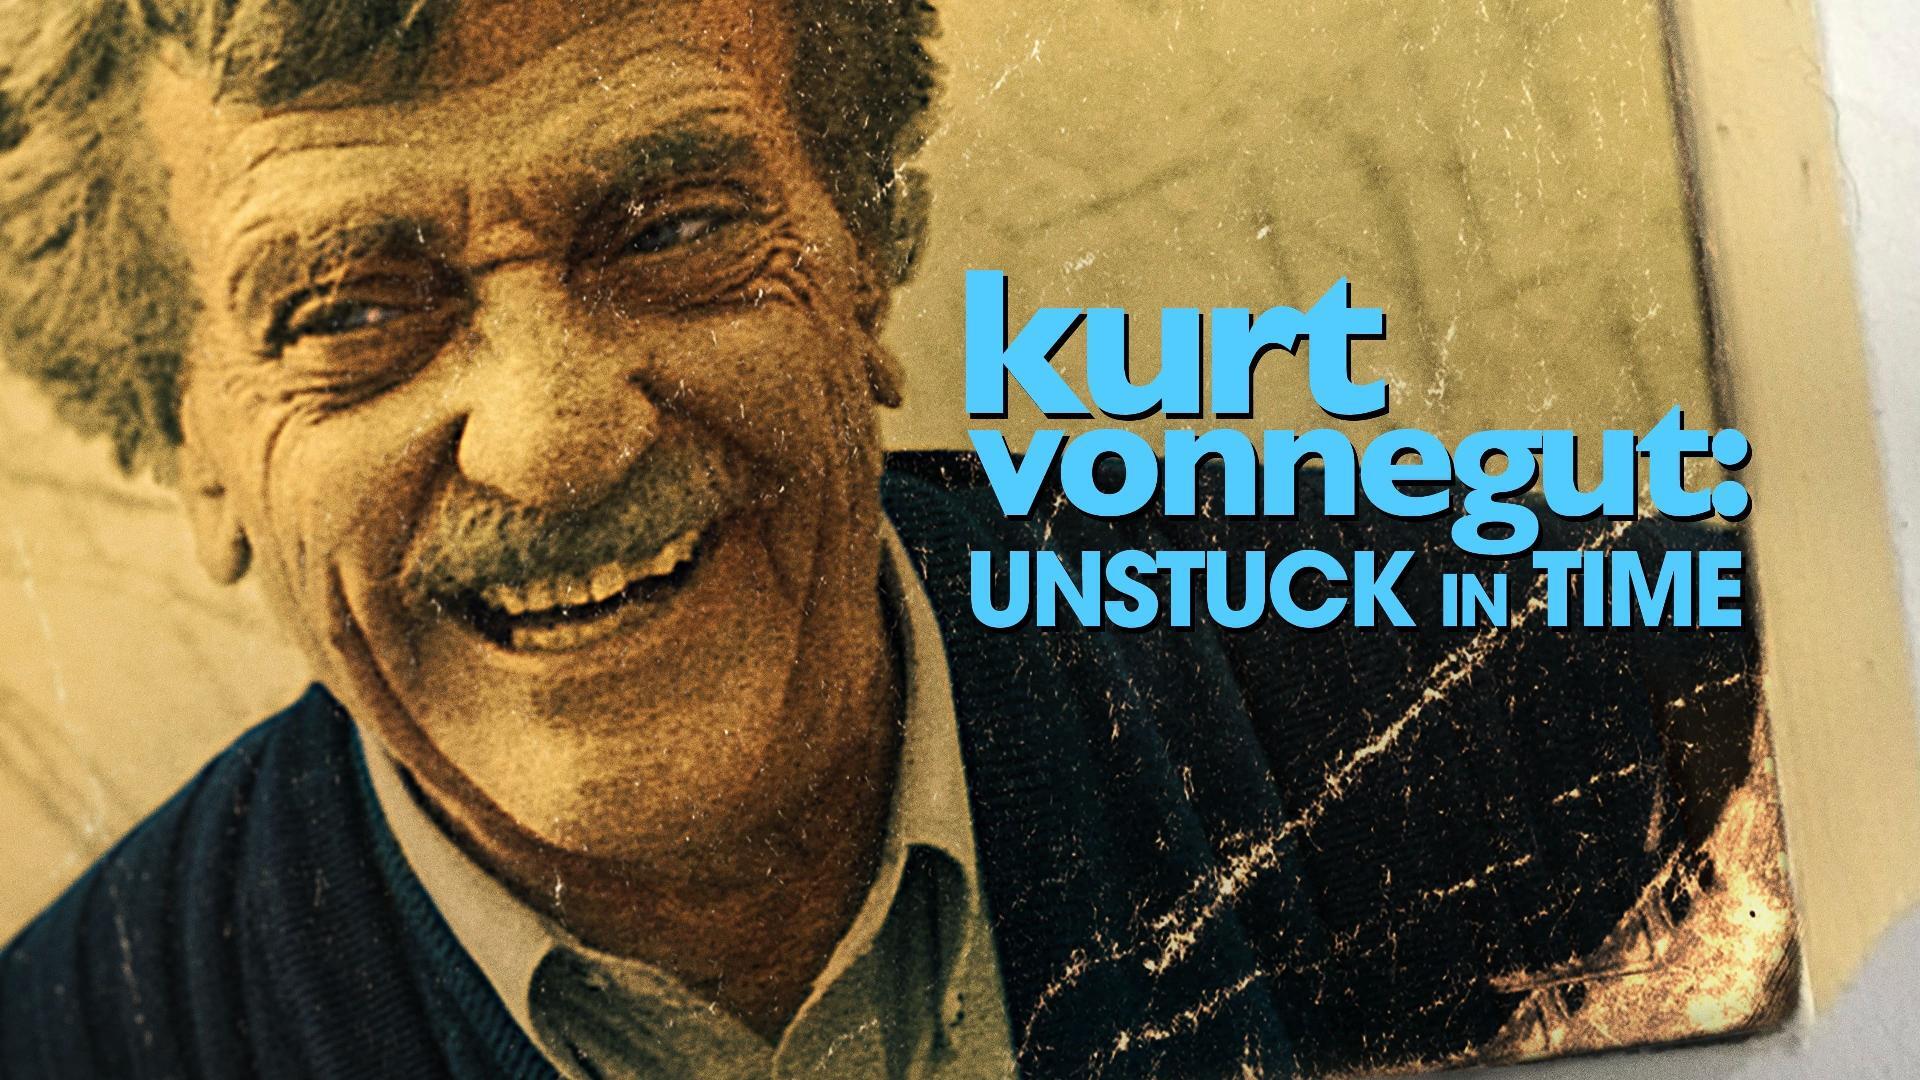 კურტ ვონეგუტი: დროის რღვევა / Kurt Vonnegut: Unstuck in Time